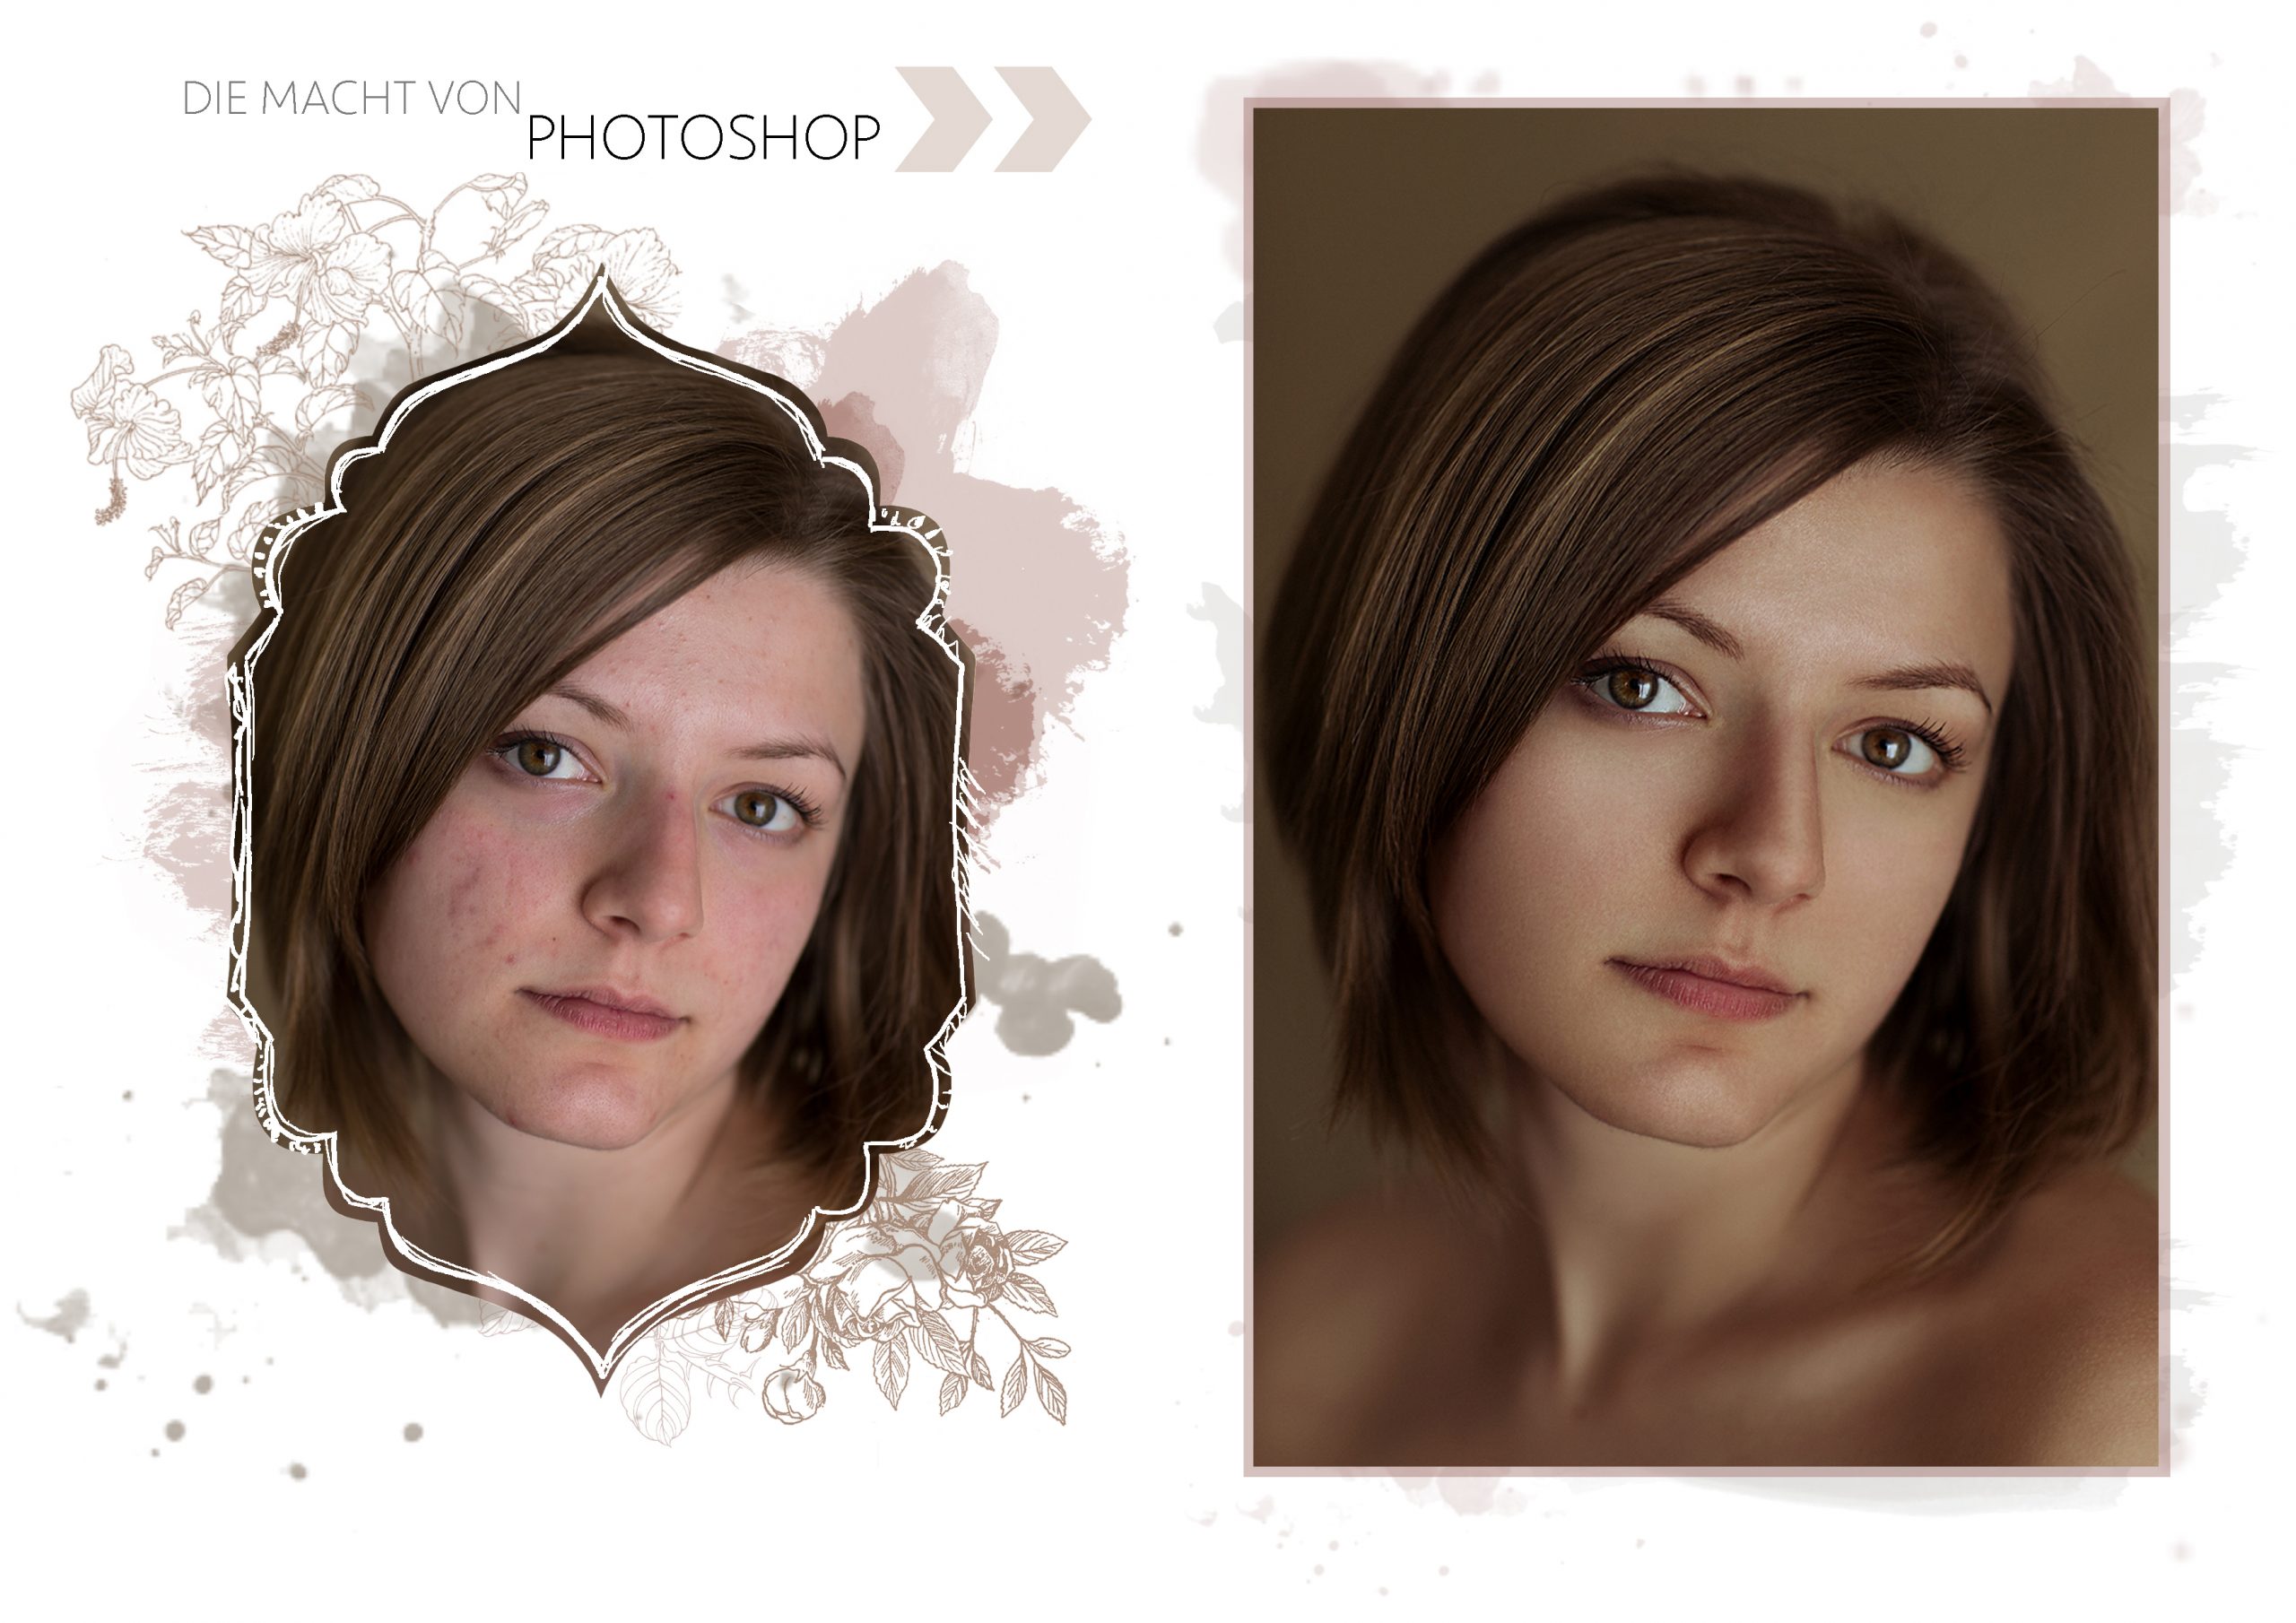 Die Macht von Photoshop - Porträt Before&After